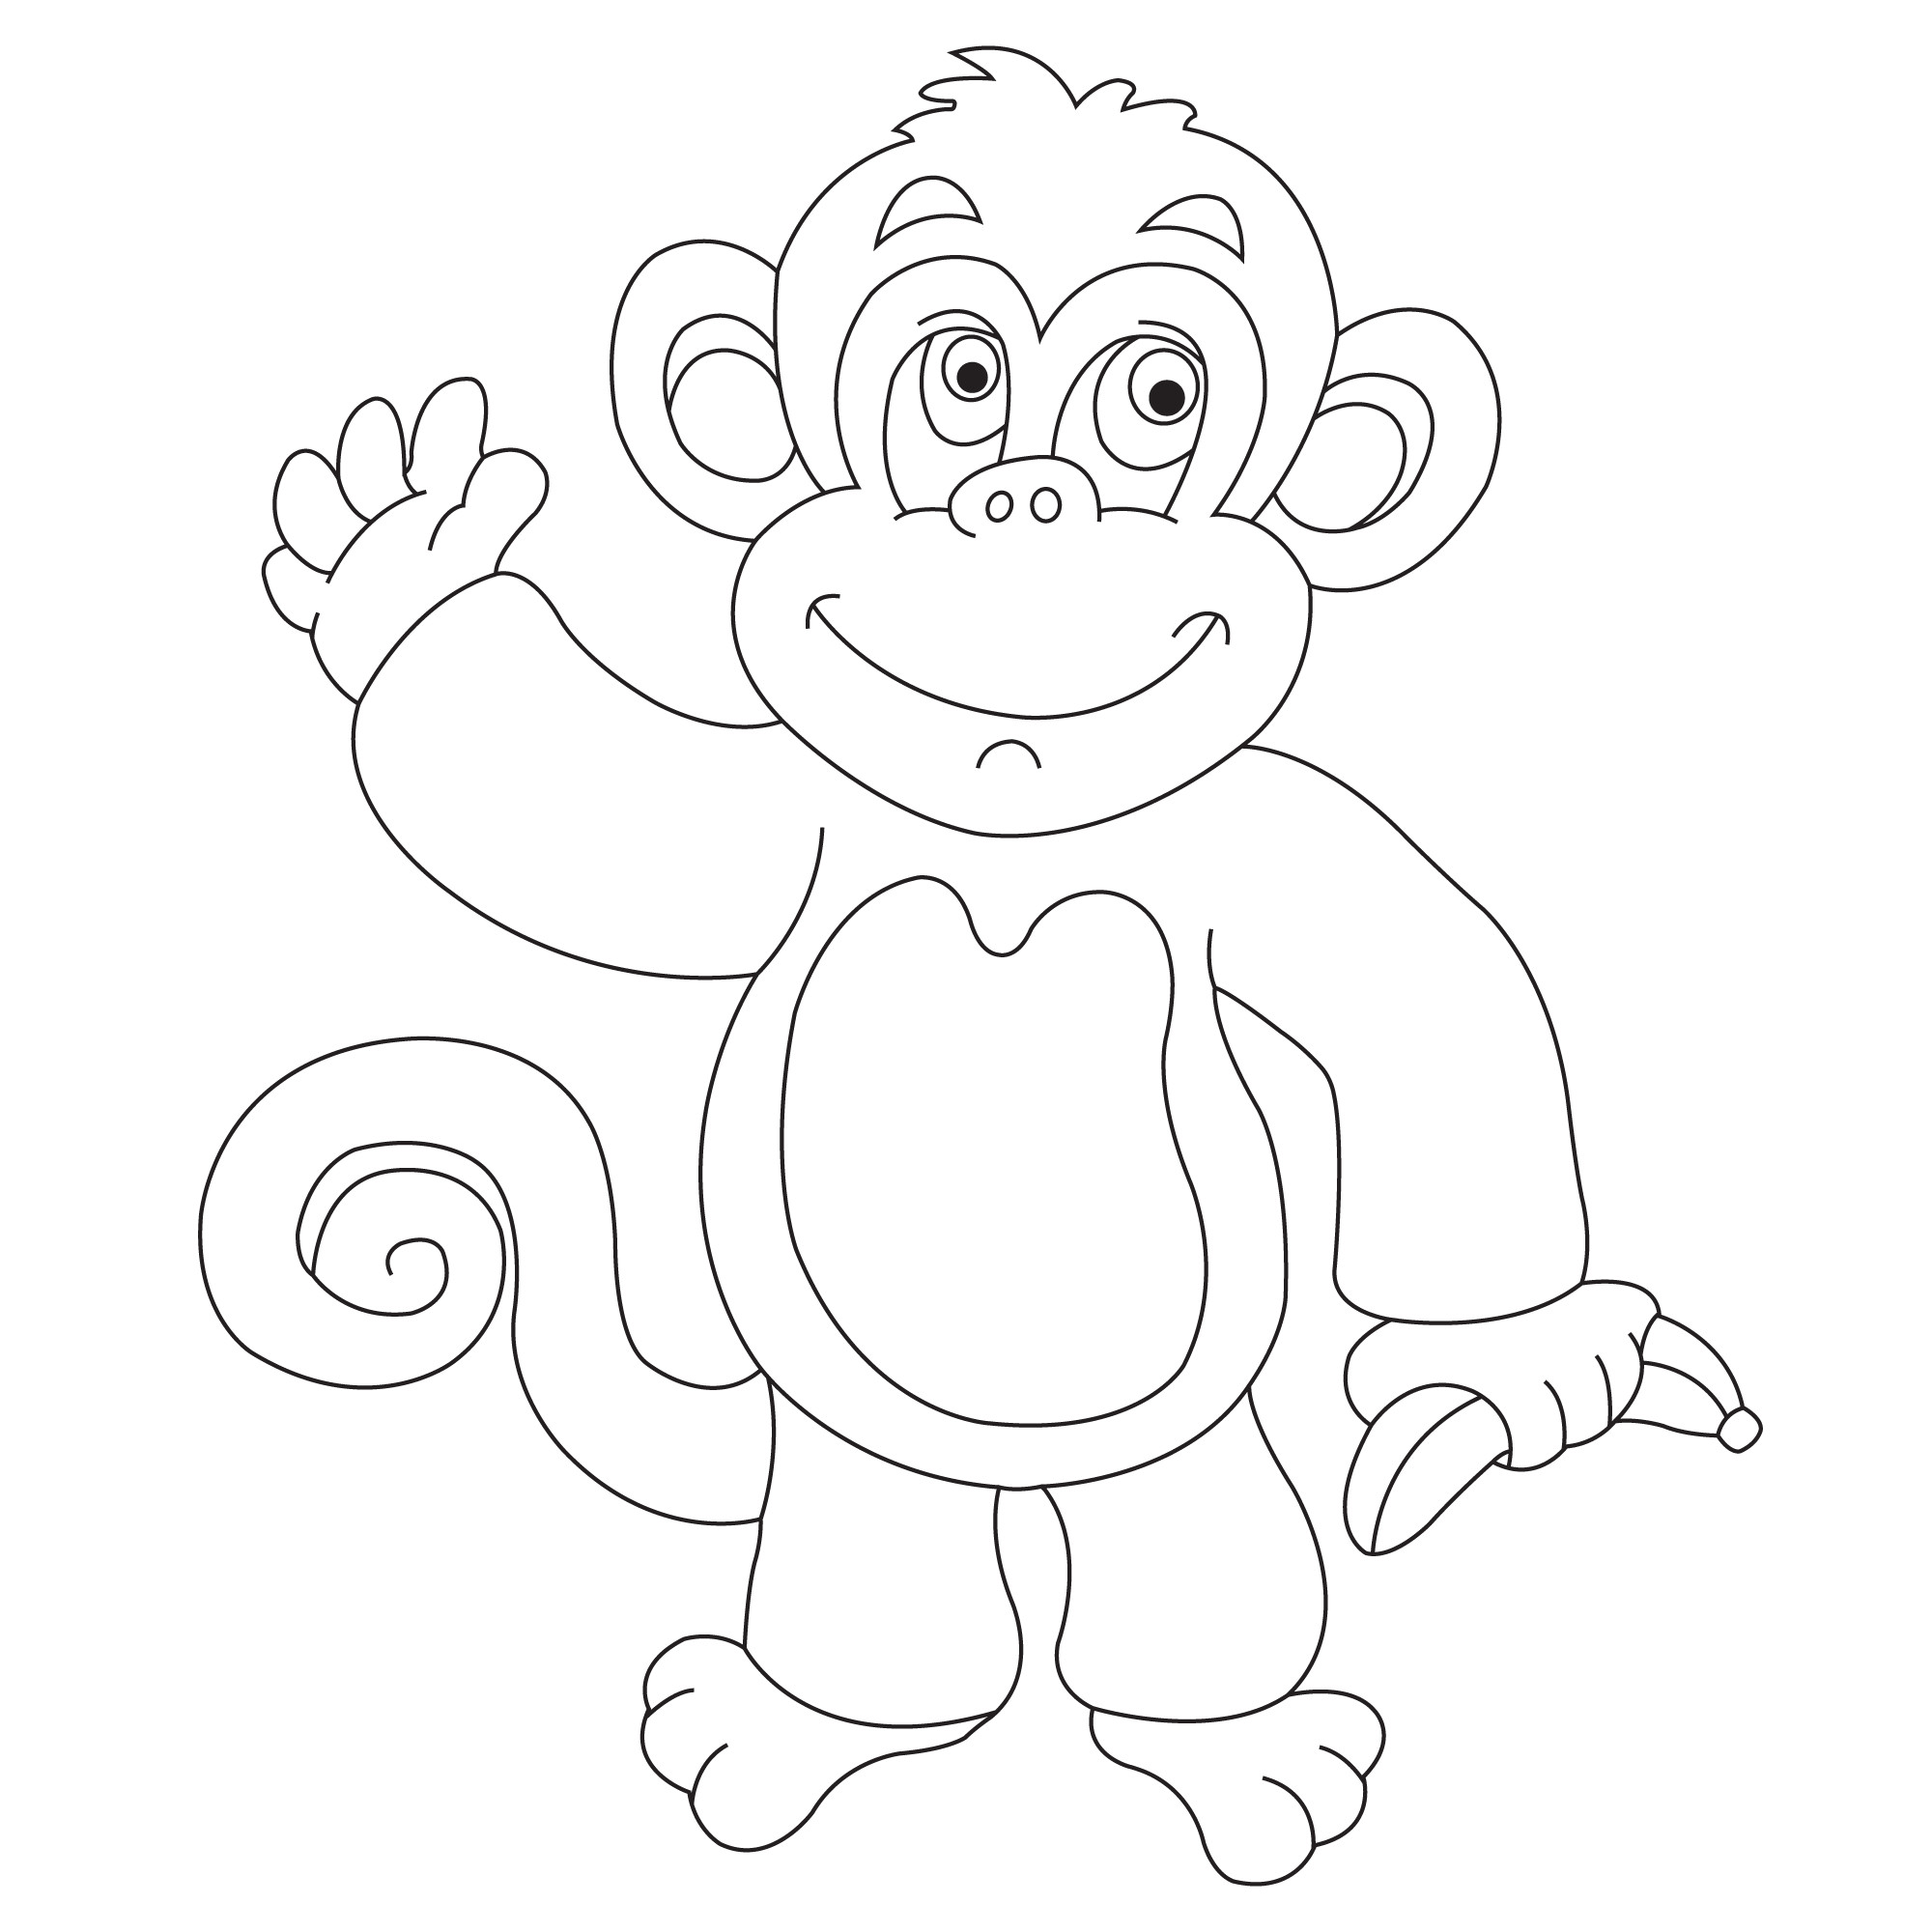 Раскраска для детей: добрая обезьяна с бананом в руке машет